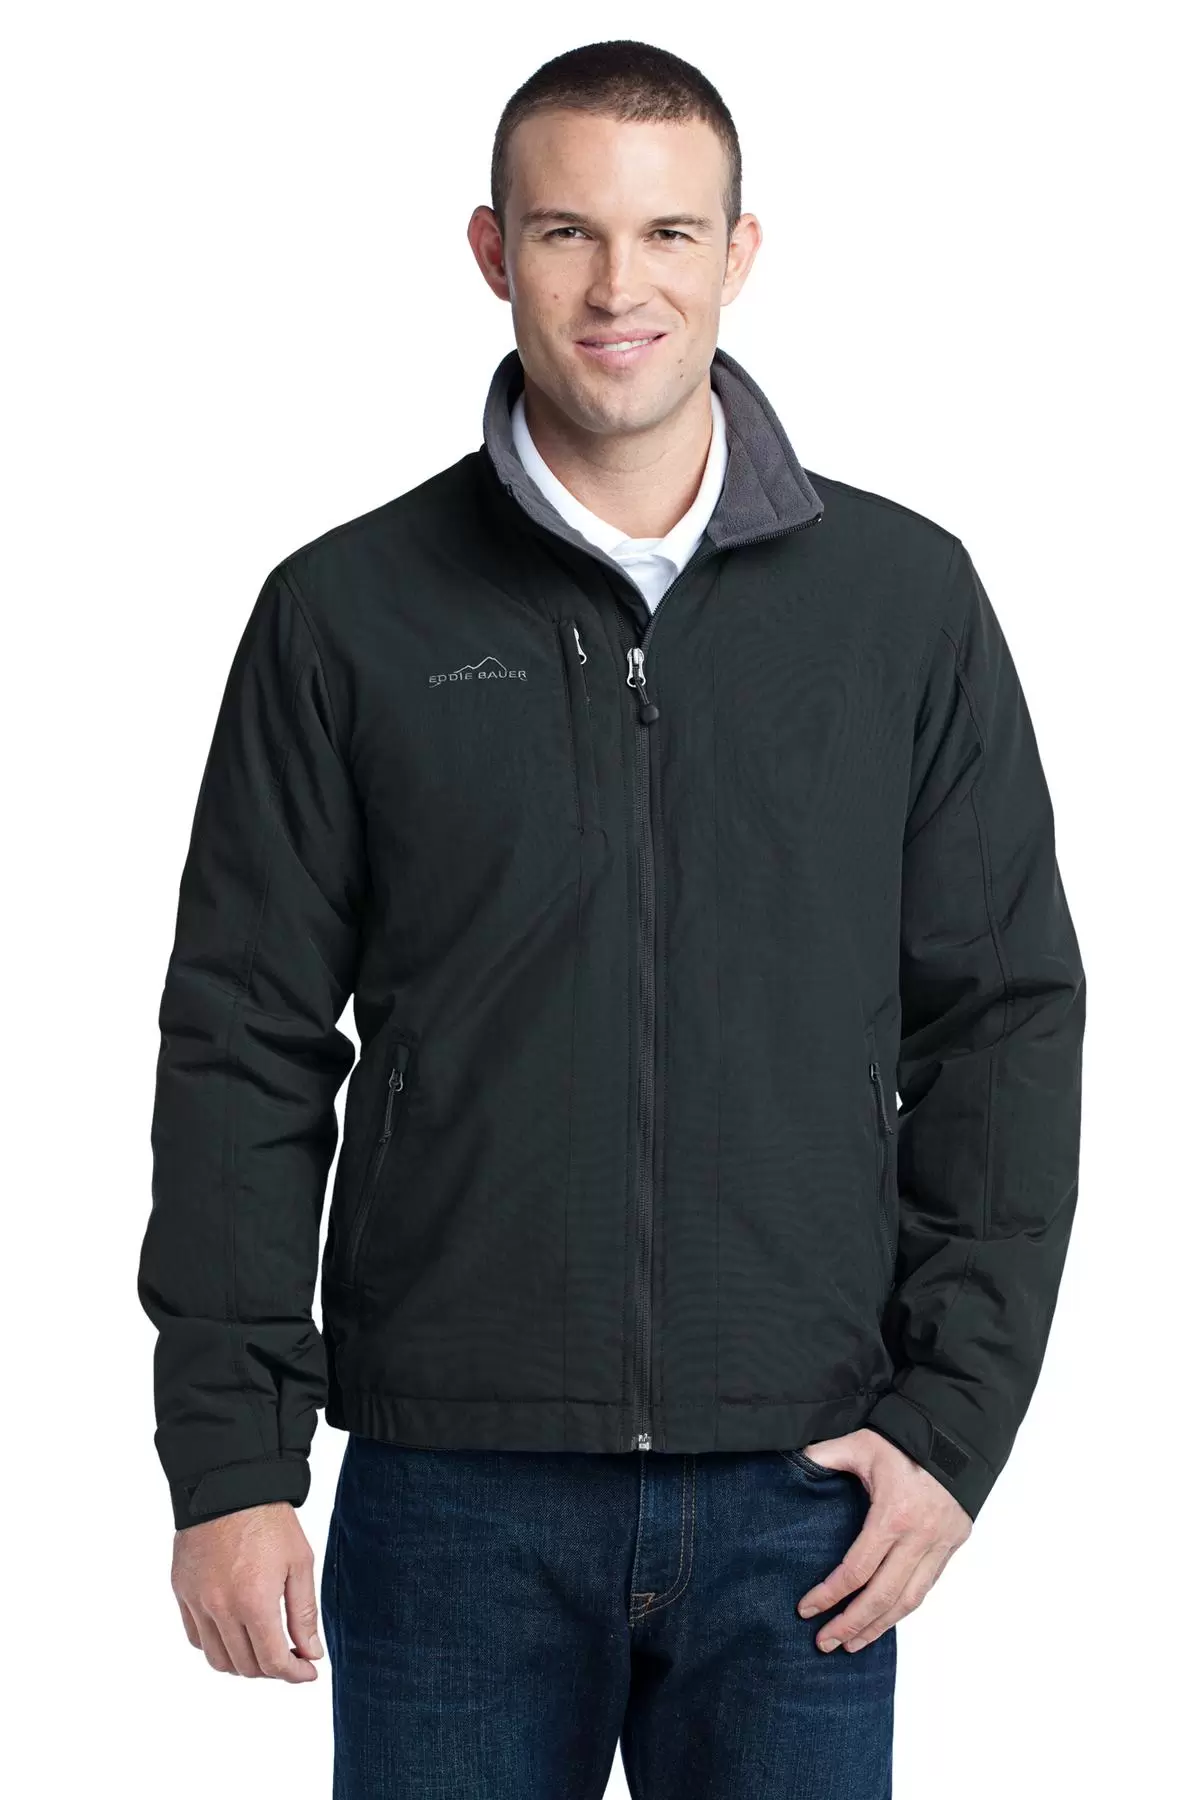 Eddie Bauer Superior Down Jacket 2.0 Medium | eBay